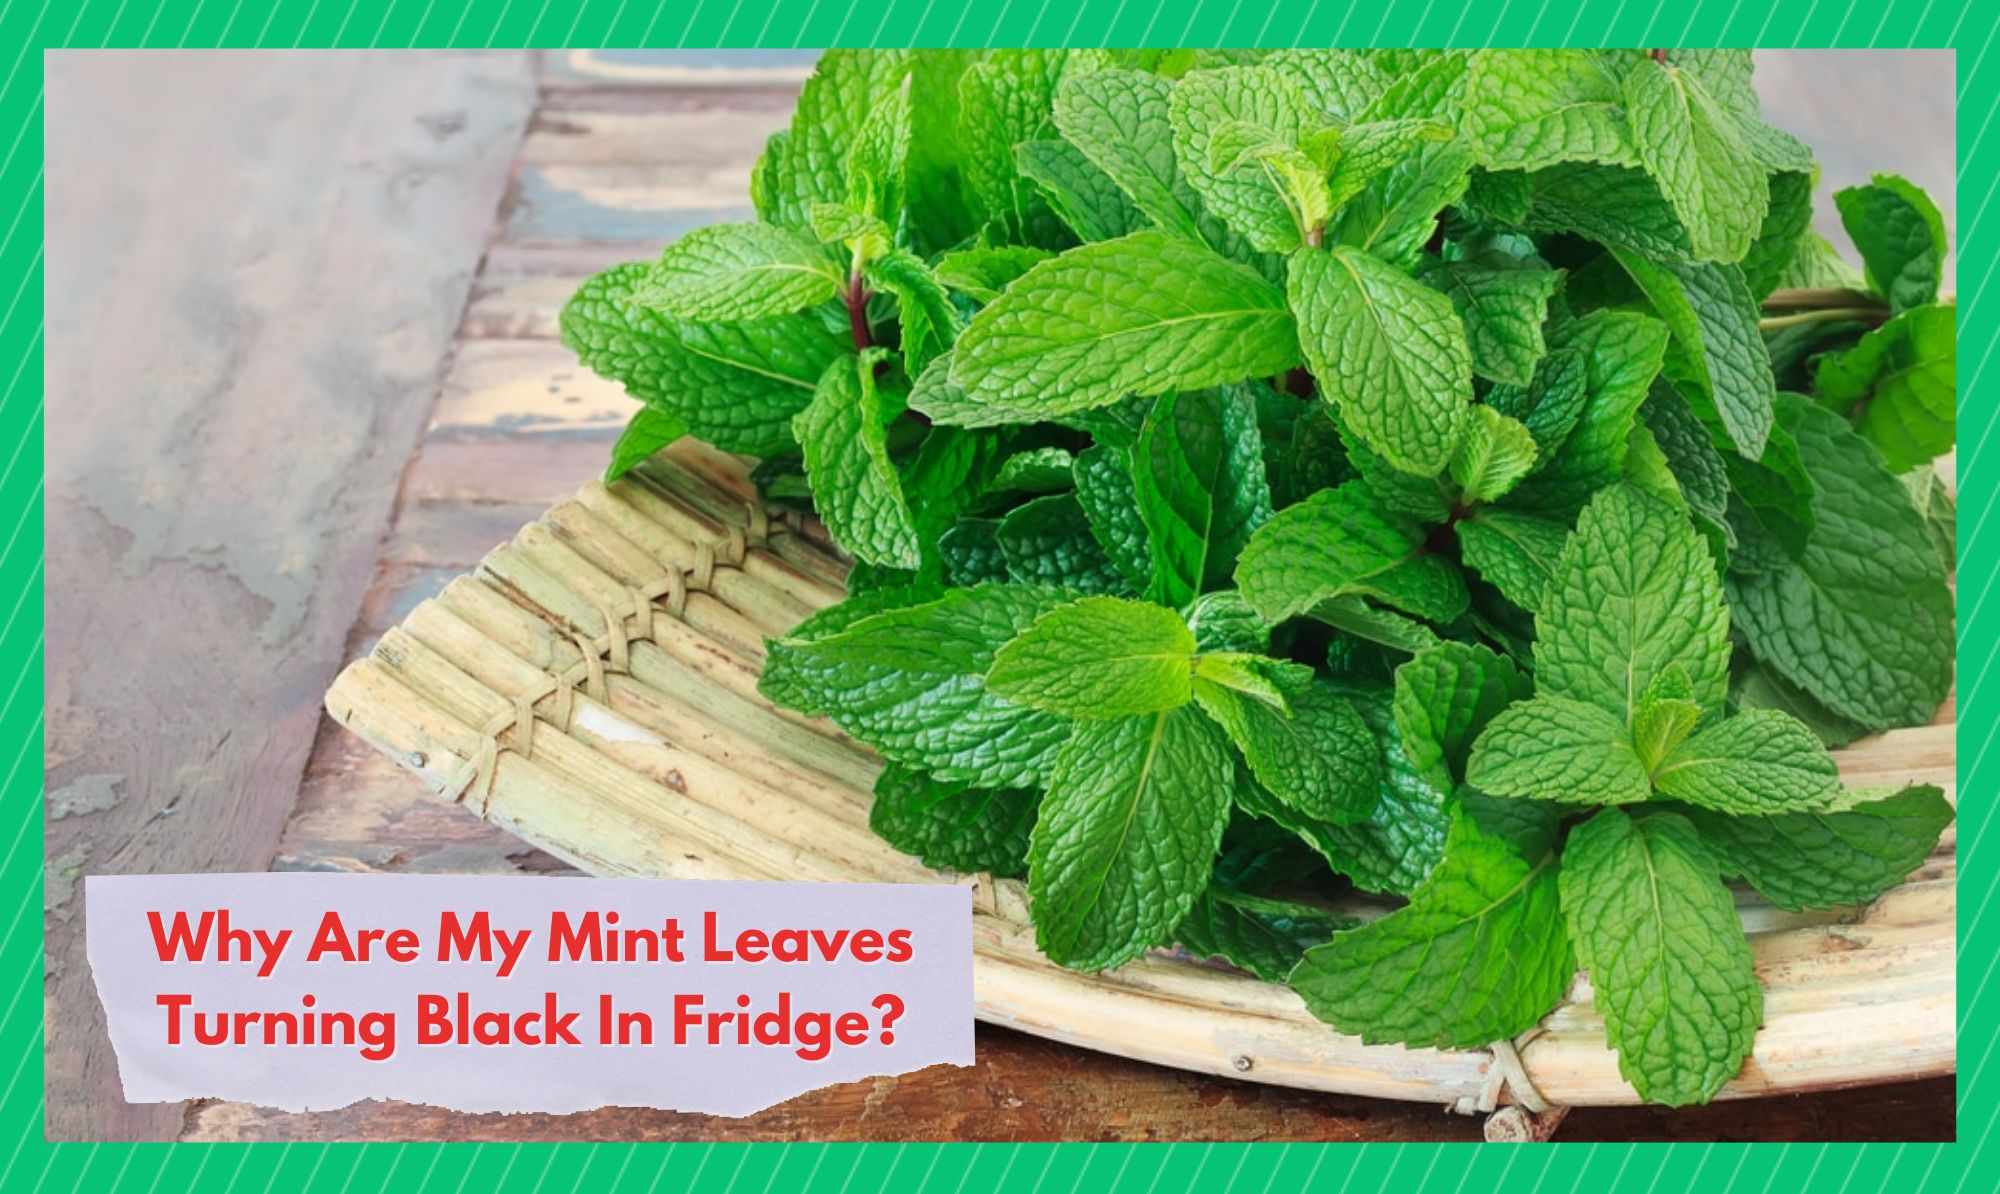 mint leaves turning black in fridge